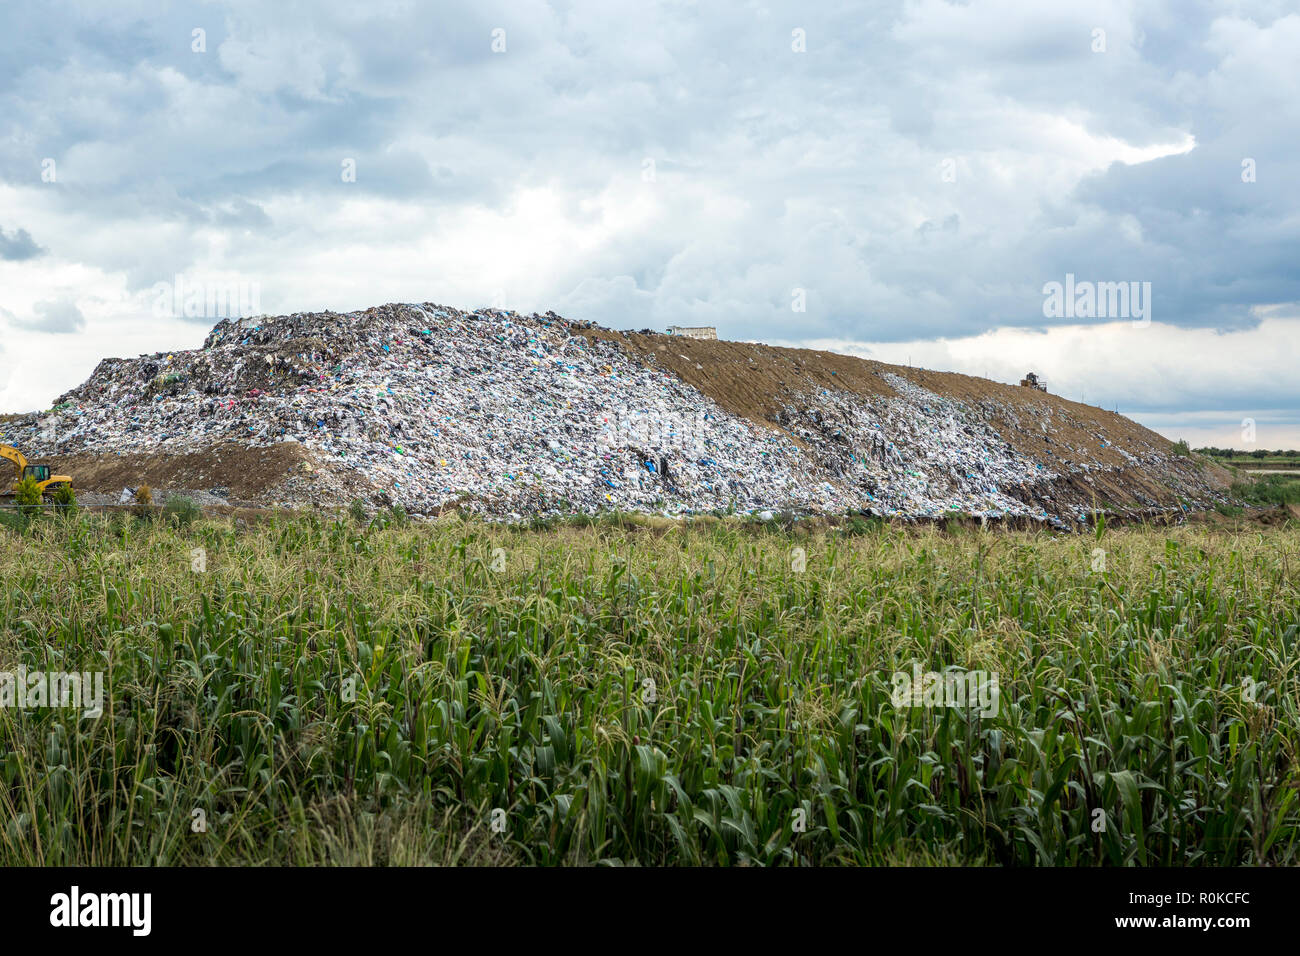 Sito per lo smaltimento dei rifiuti accanto a cornfield, Cholula, Puebla, Messico Foto Stock